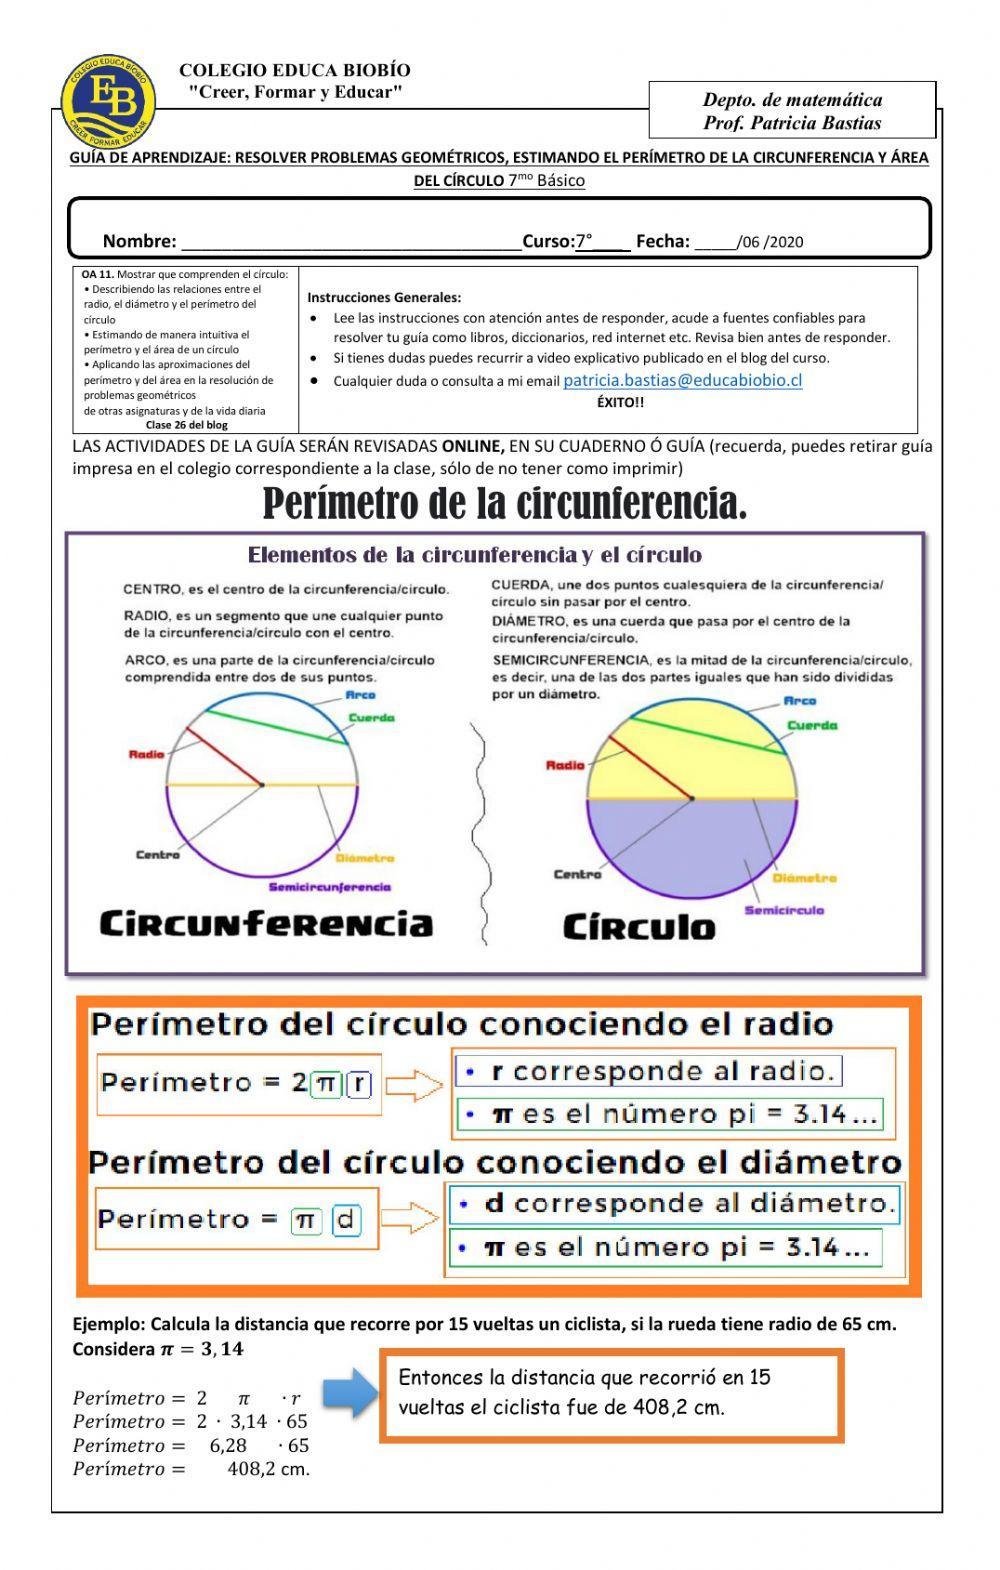 CLASE 27 Resolver problemas geométricos, estimando el perímetro de la circunferencia y área del círculo